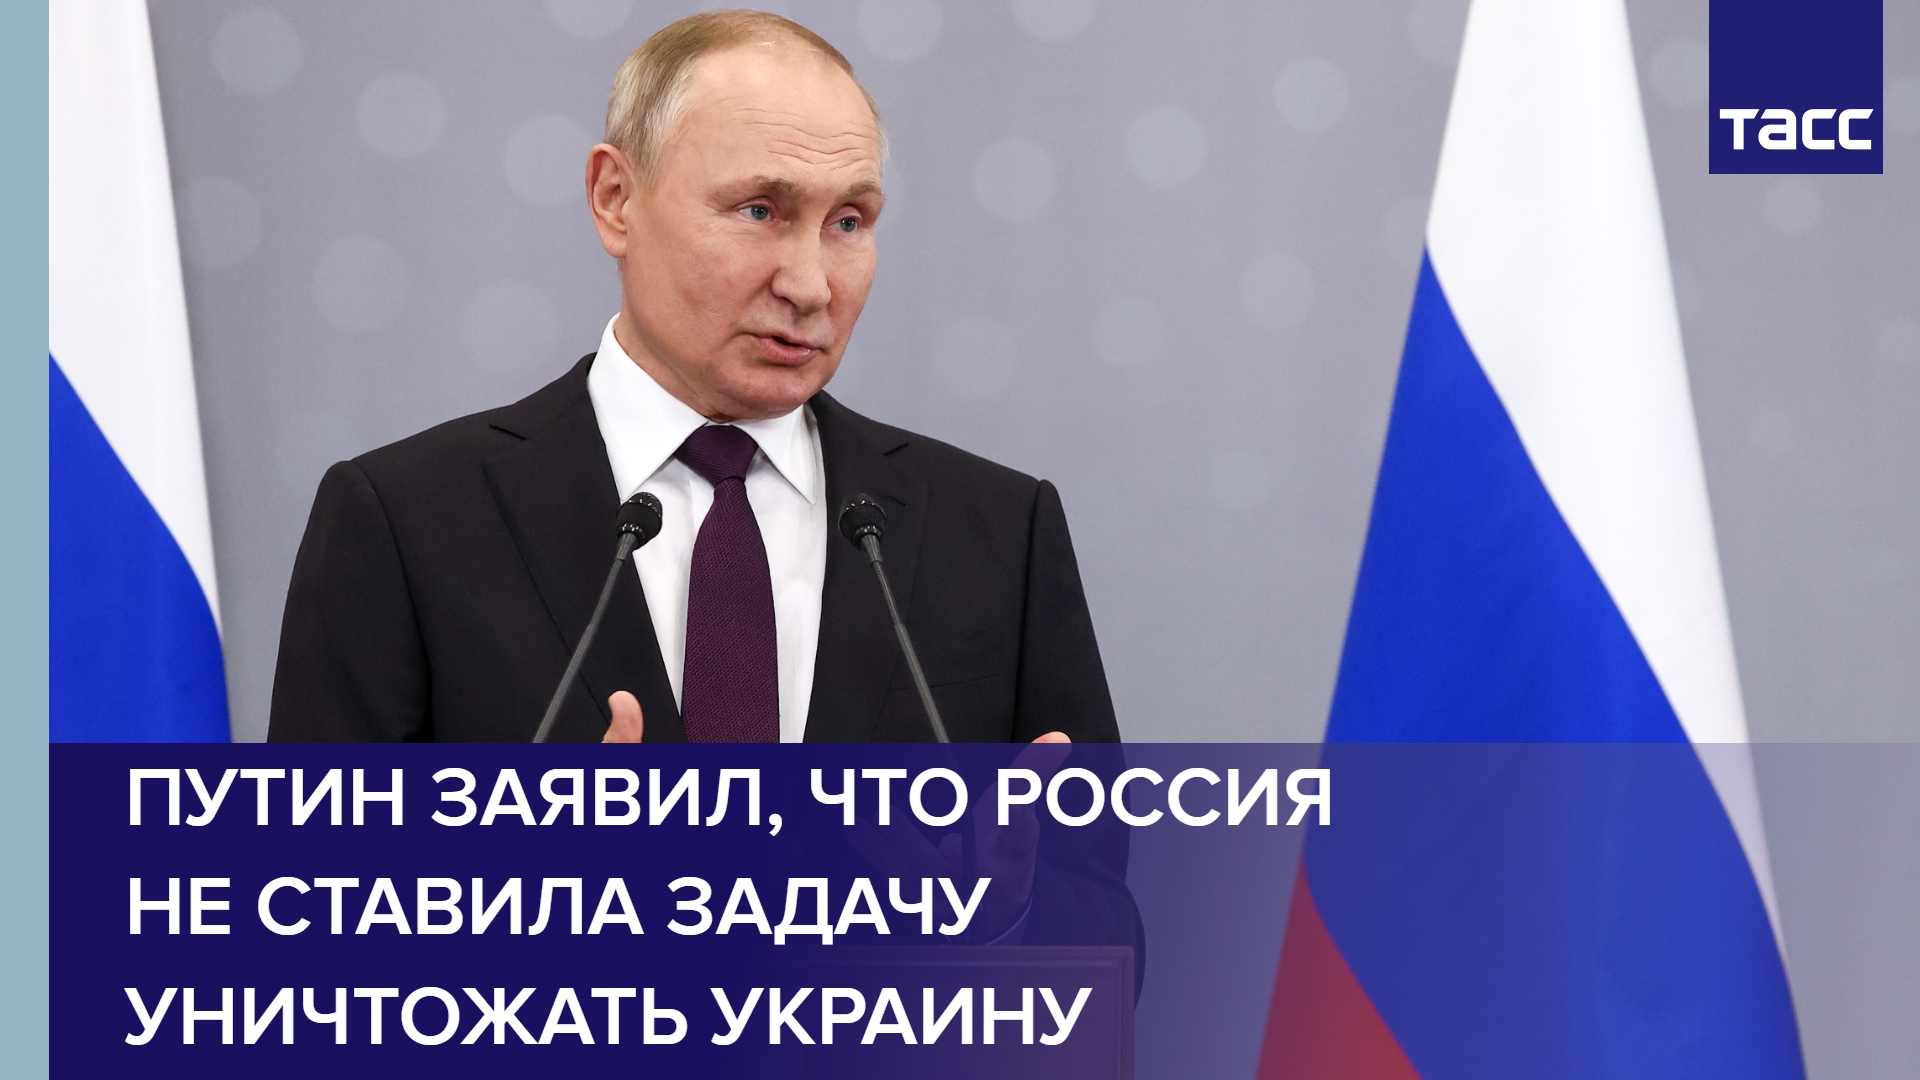 Путин заявил, что Россия не ставила задачу уничтожать Украину #shorts